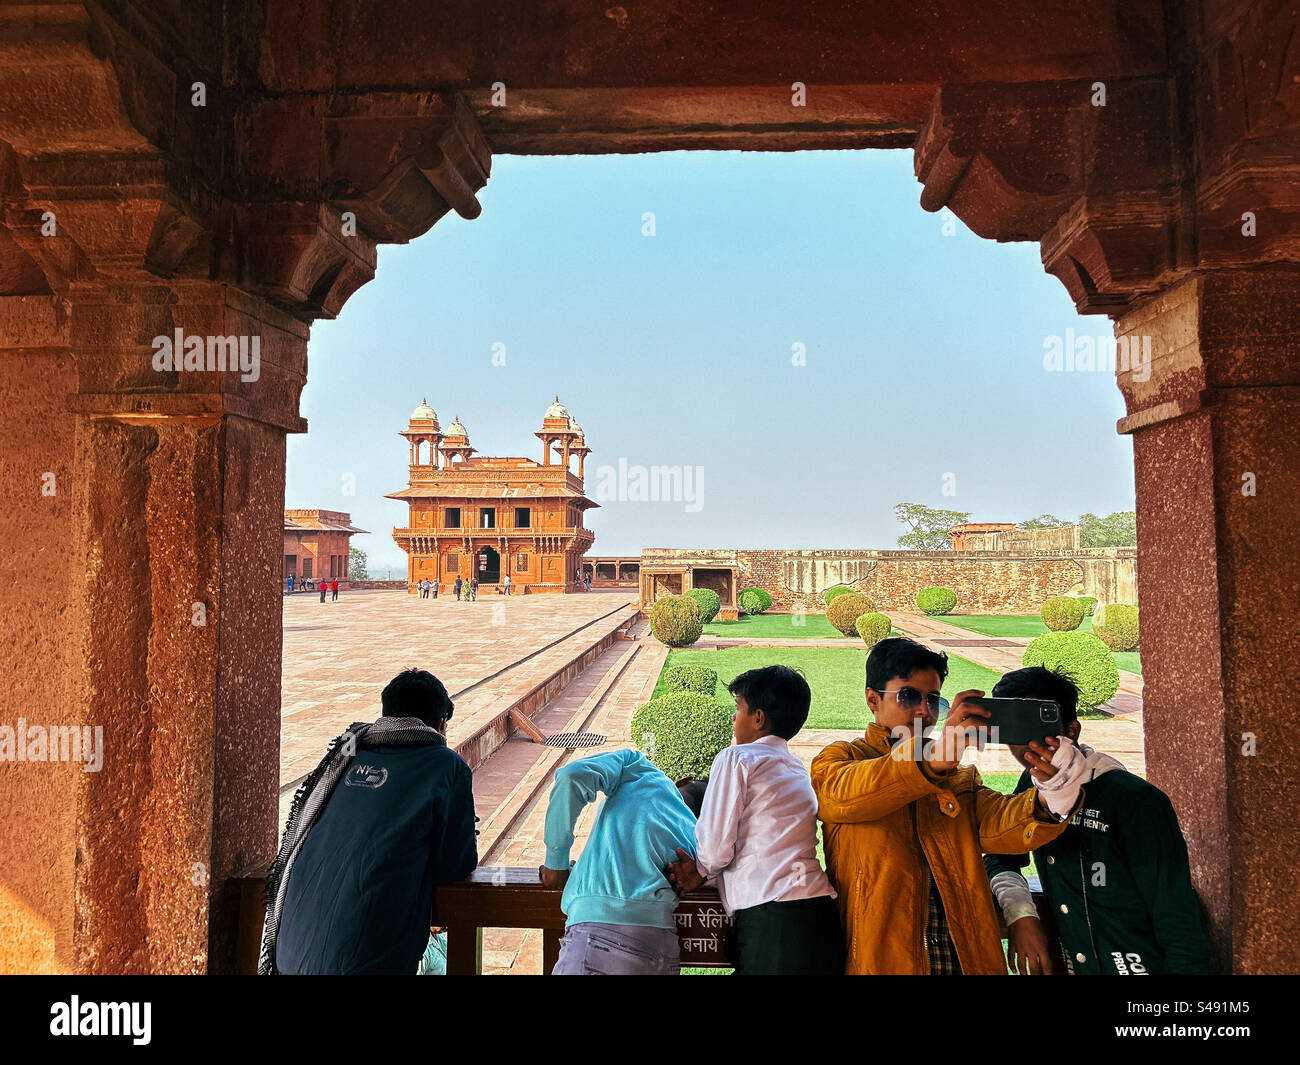 Touristes indiens au palais de l'empereur Akbar en Inde à Fatehpur Sikri, un site du patrimoine mondial de l'UNESCO Banque D'Images